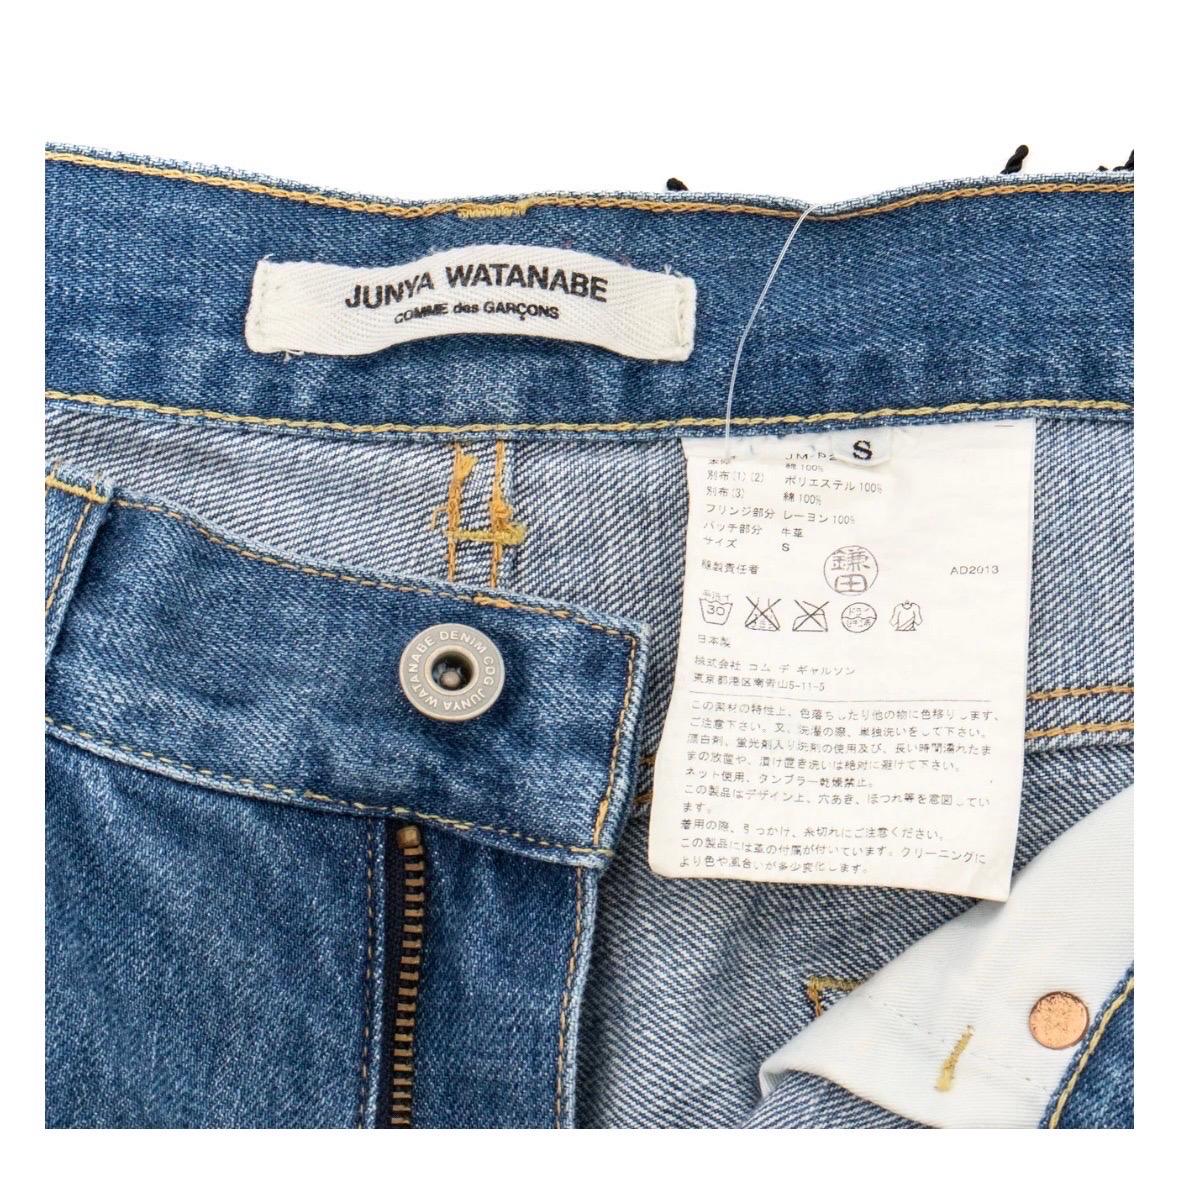 Junya Watanabe Comme des Garçon Fringed Patchwork Jeans 2014 For Sale 4